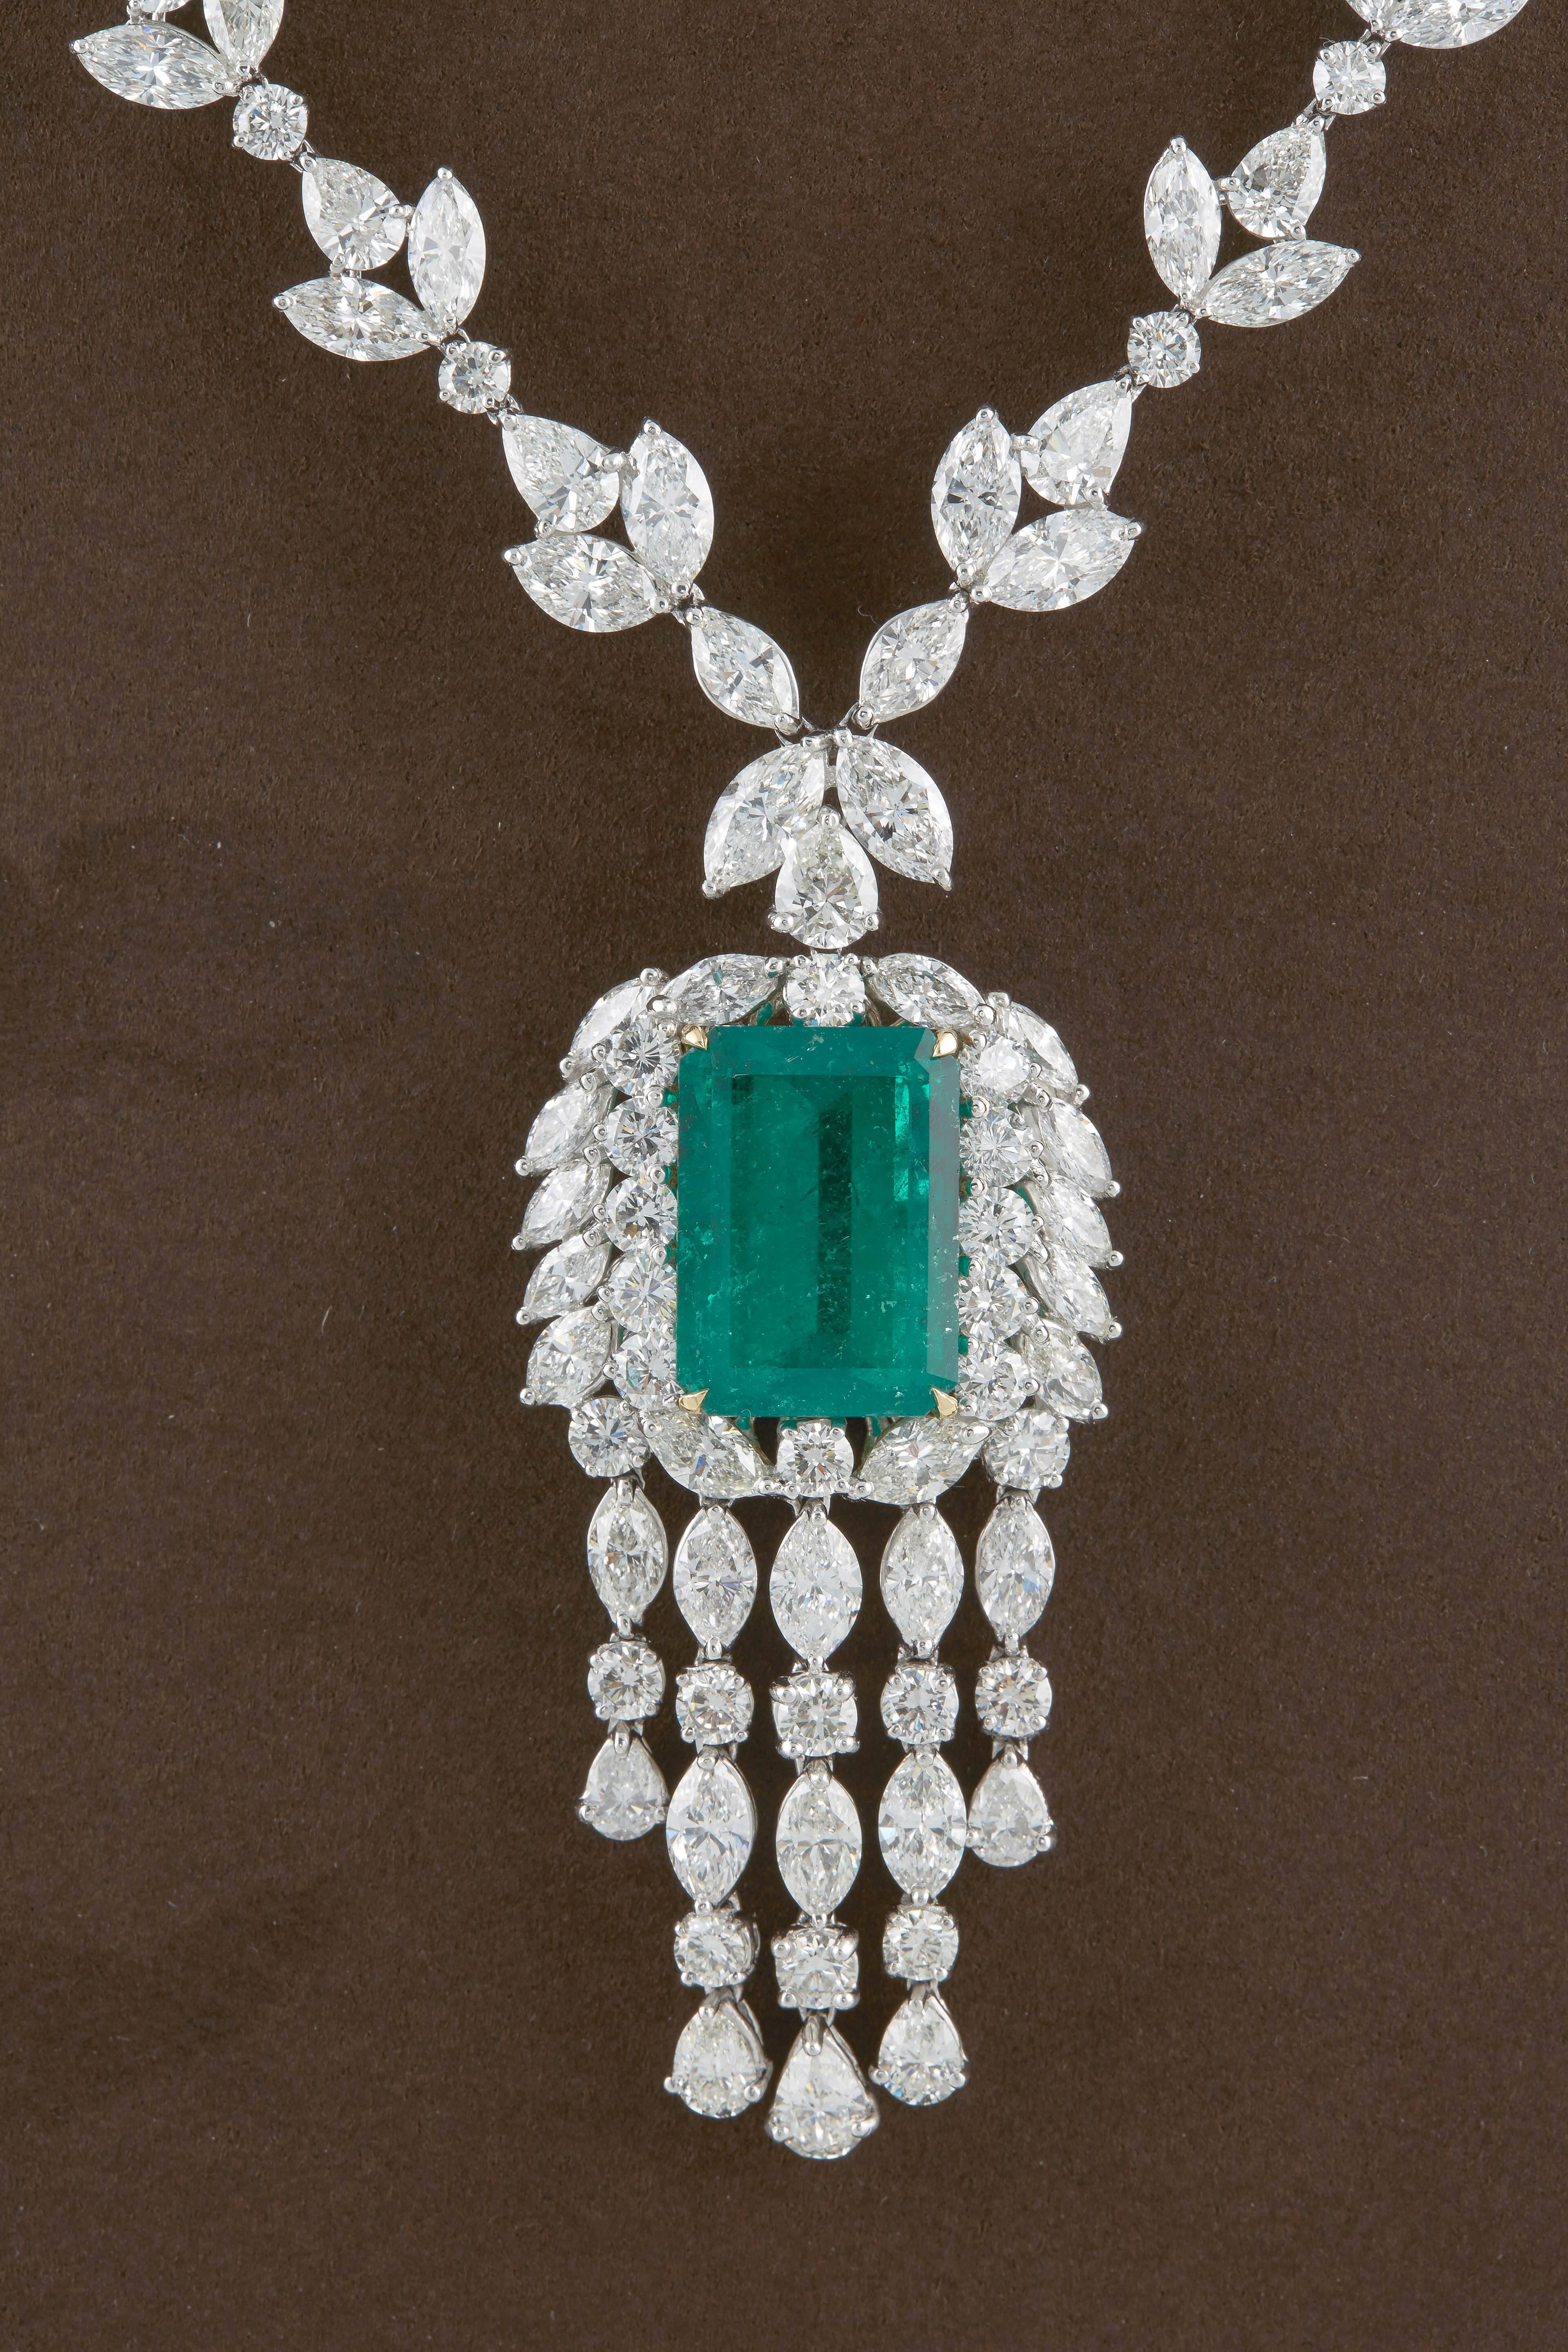 

Une magnifique émeraude verte colombienne sertie dans un collier FABULOUS !

20.émeraude verte colombienne de 98 carats certifiée par le GIA, d'une couleur et d'un éclat magnifiques. 

68.06 carats de diamants F/G VS de taille ronde, poire et